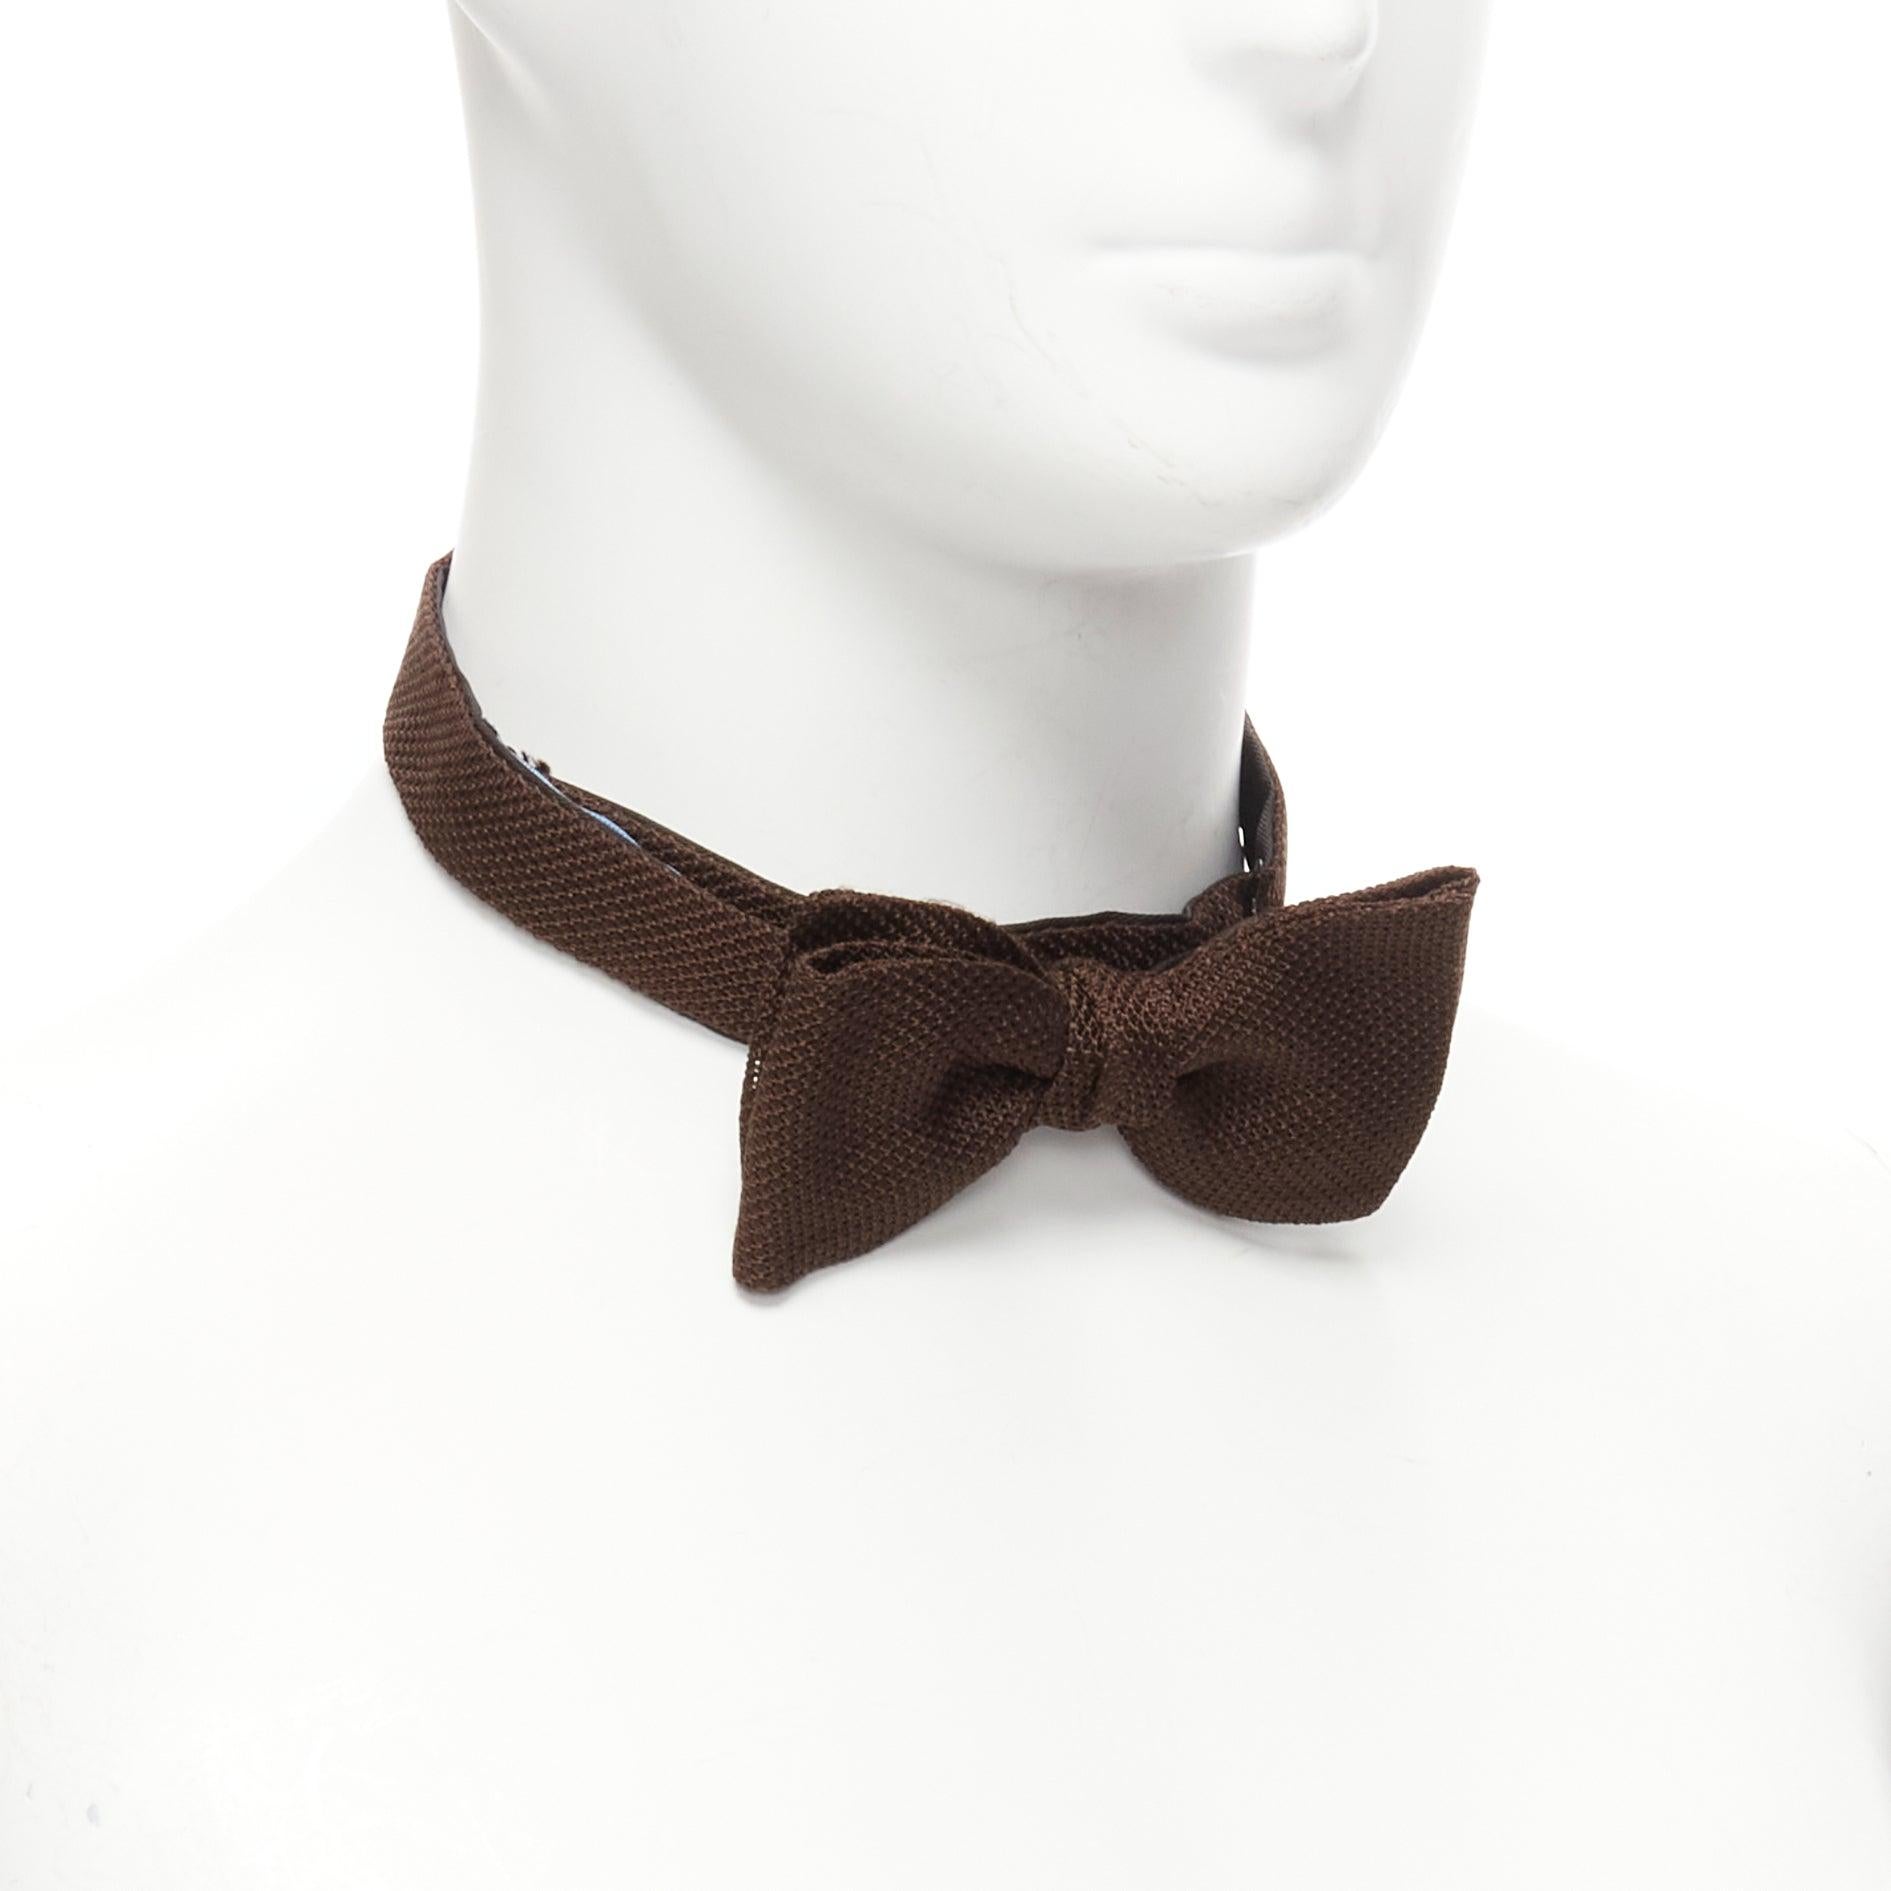 Gris new LANVIN Alber Elbaz Brown textured fabric bow tie Adjustable en vente